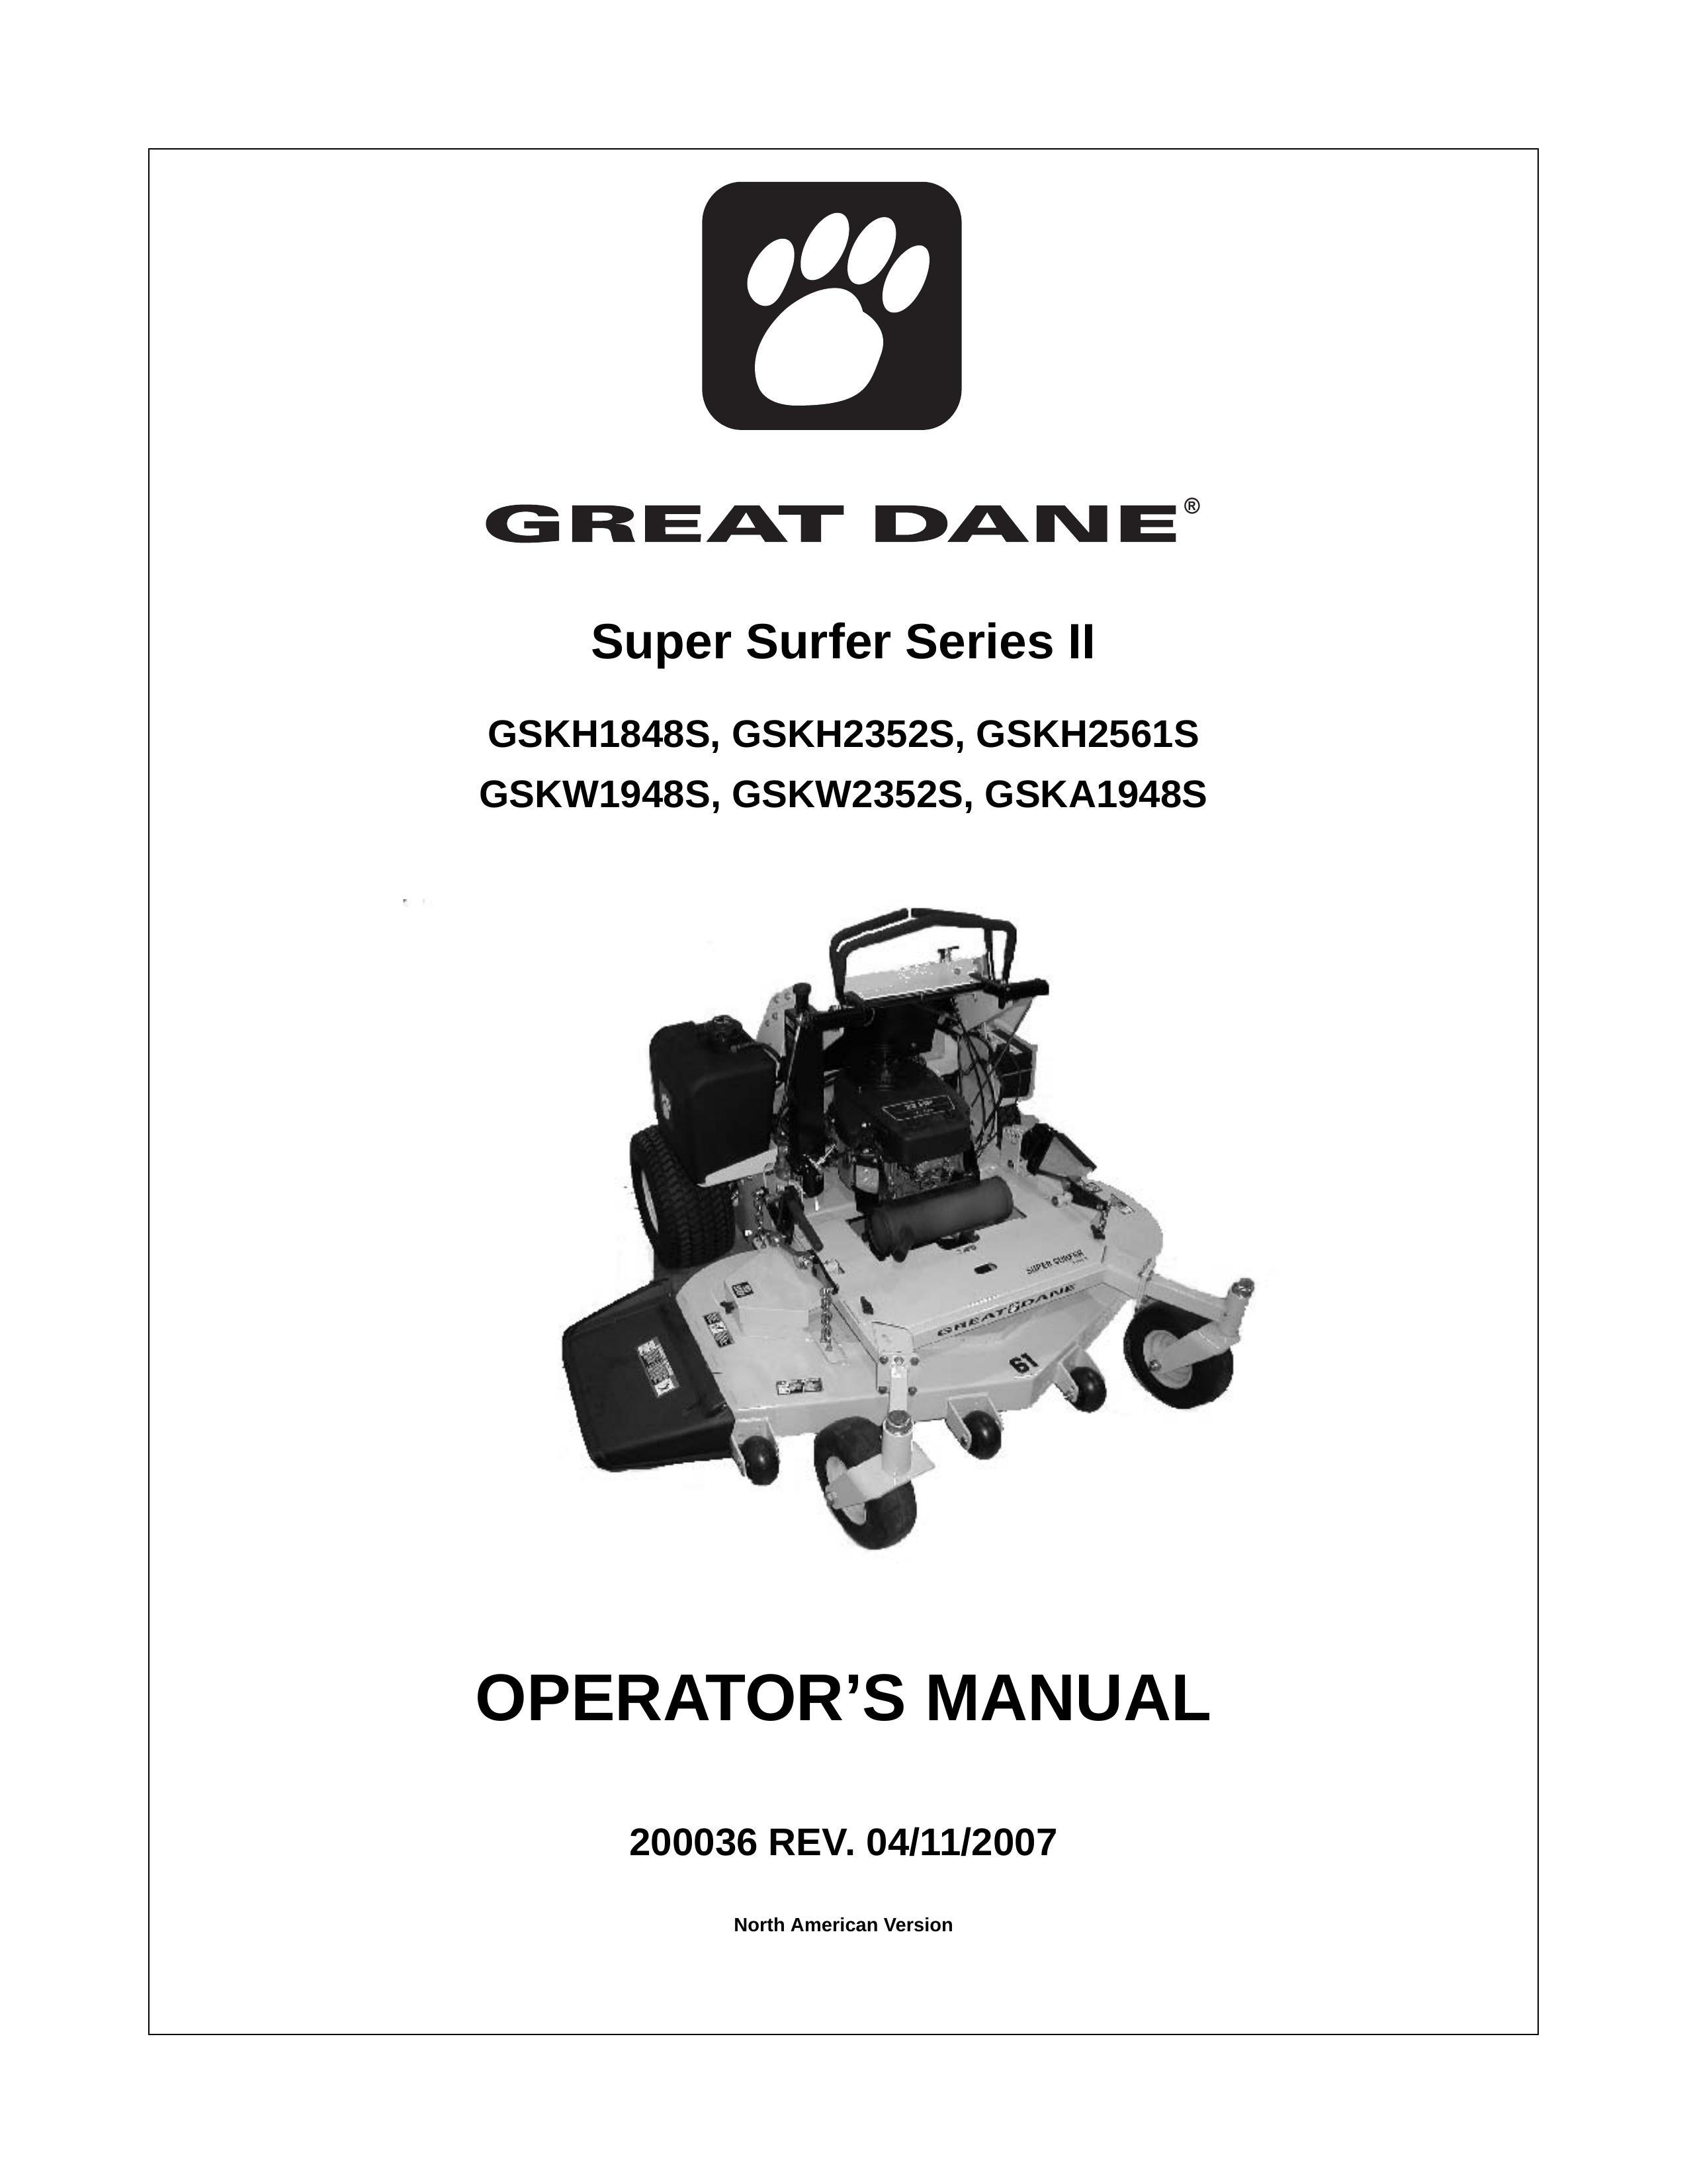 Great Dane GSKH1848S Lawn Mower User Manual